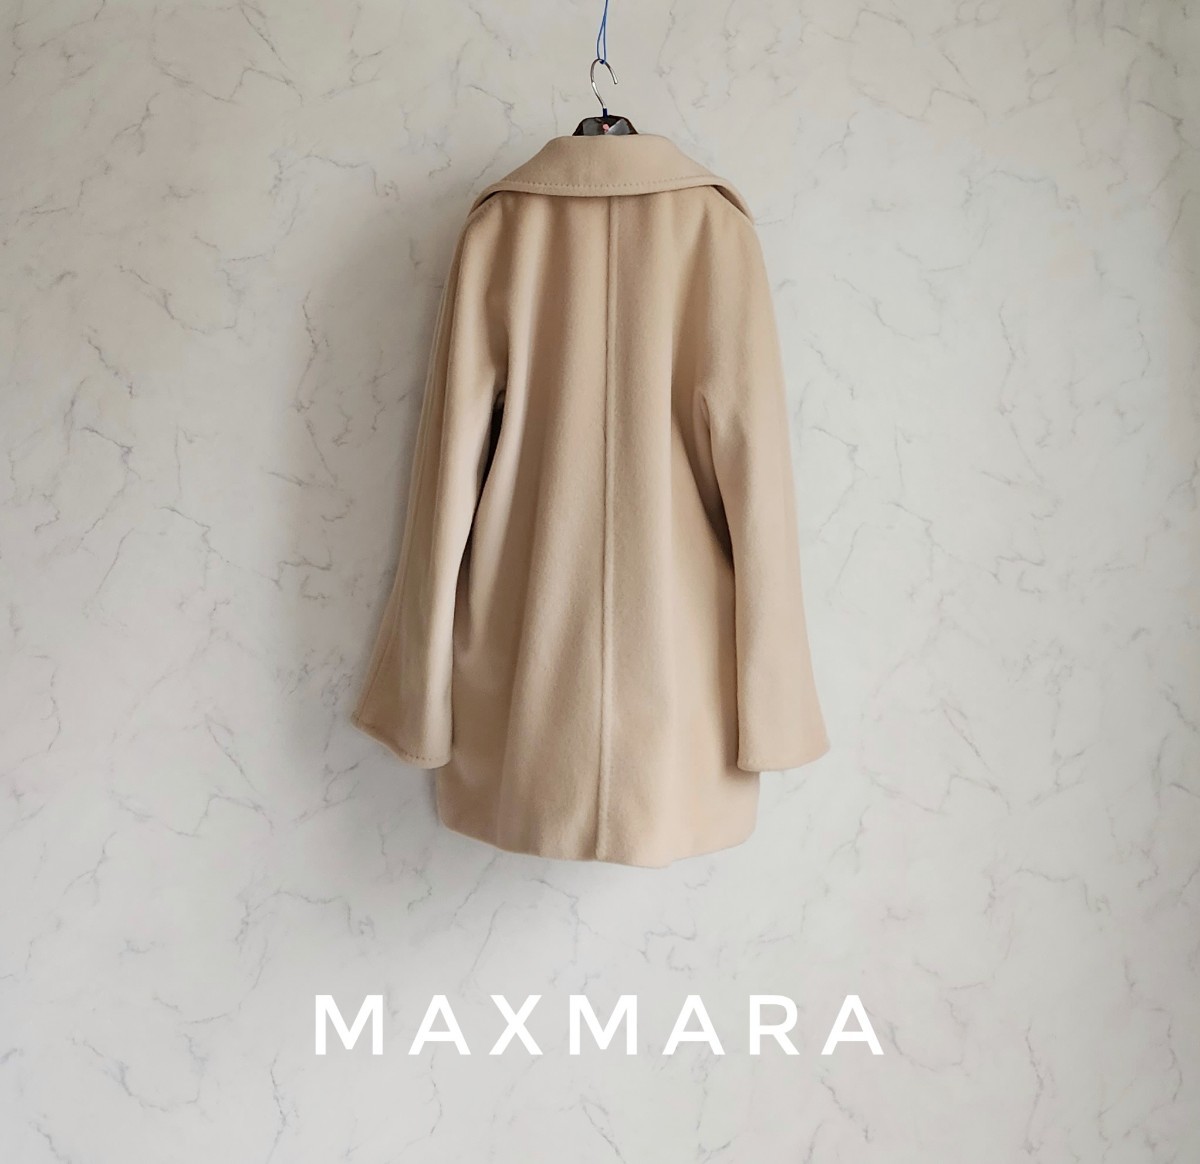 超高級 美品 Maxmara 最高級白タグ 憧れの大人気セレブ御用達コート 一級品イタリア製 おしゃれオーバーサイズデザイン マックスマーラ _画像10